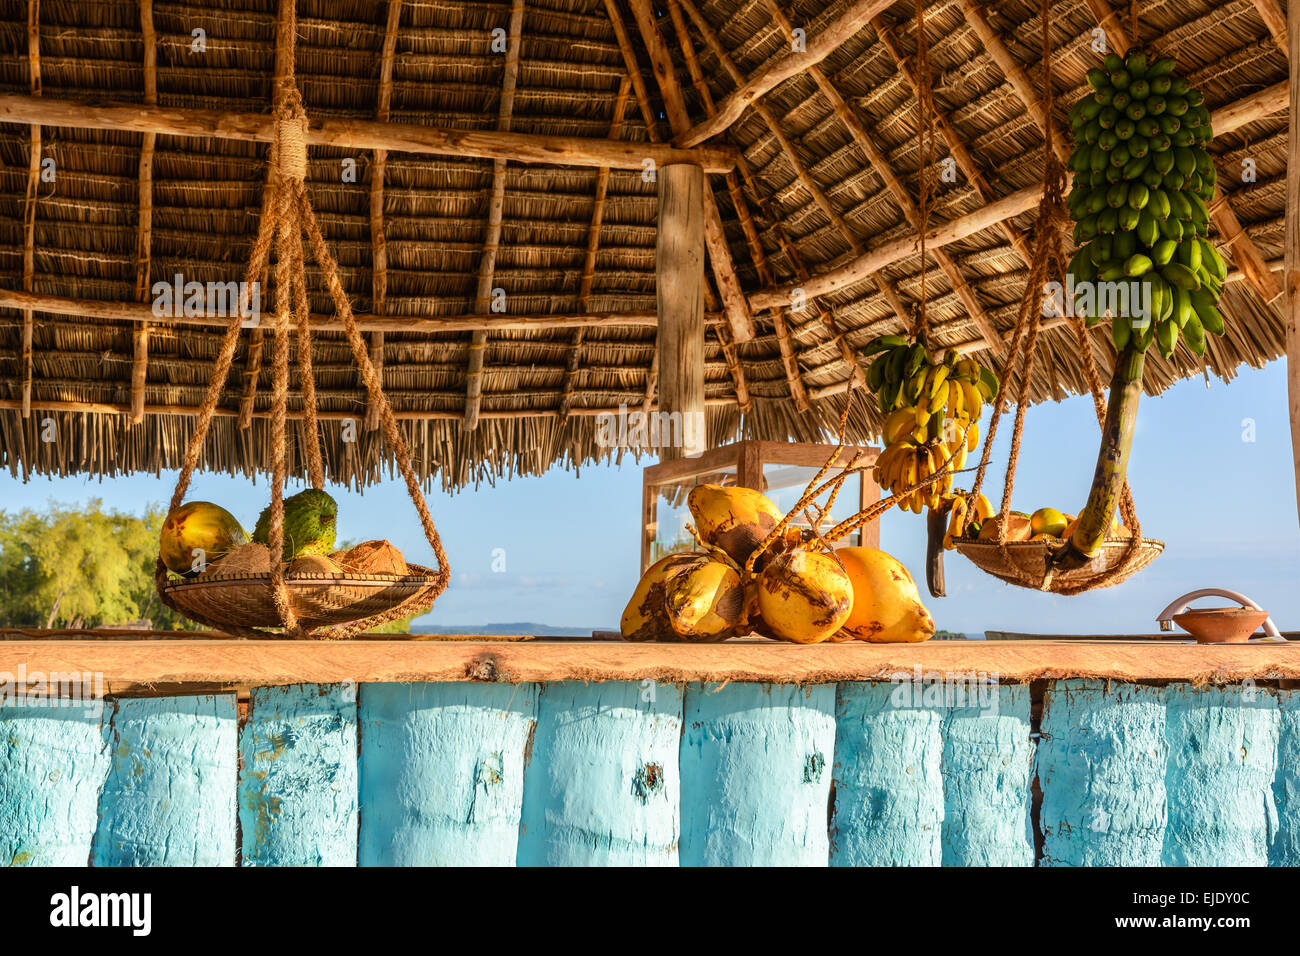 Nella foto il bar sulla spiaggia di Nungwi ( Zanzibar ) al tramonto , con esposto il cocco , banana e frutta tropicale .Questa barra è realizzata w Foto Stock